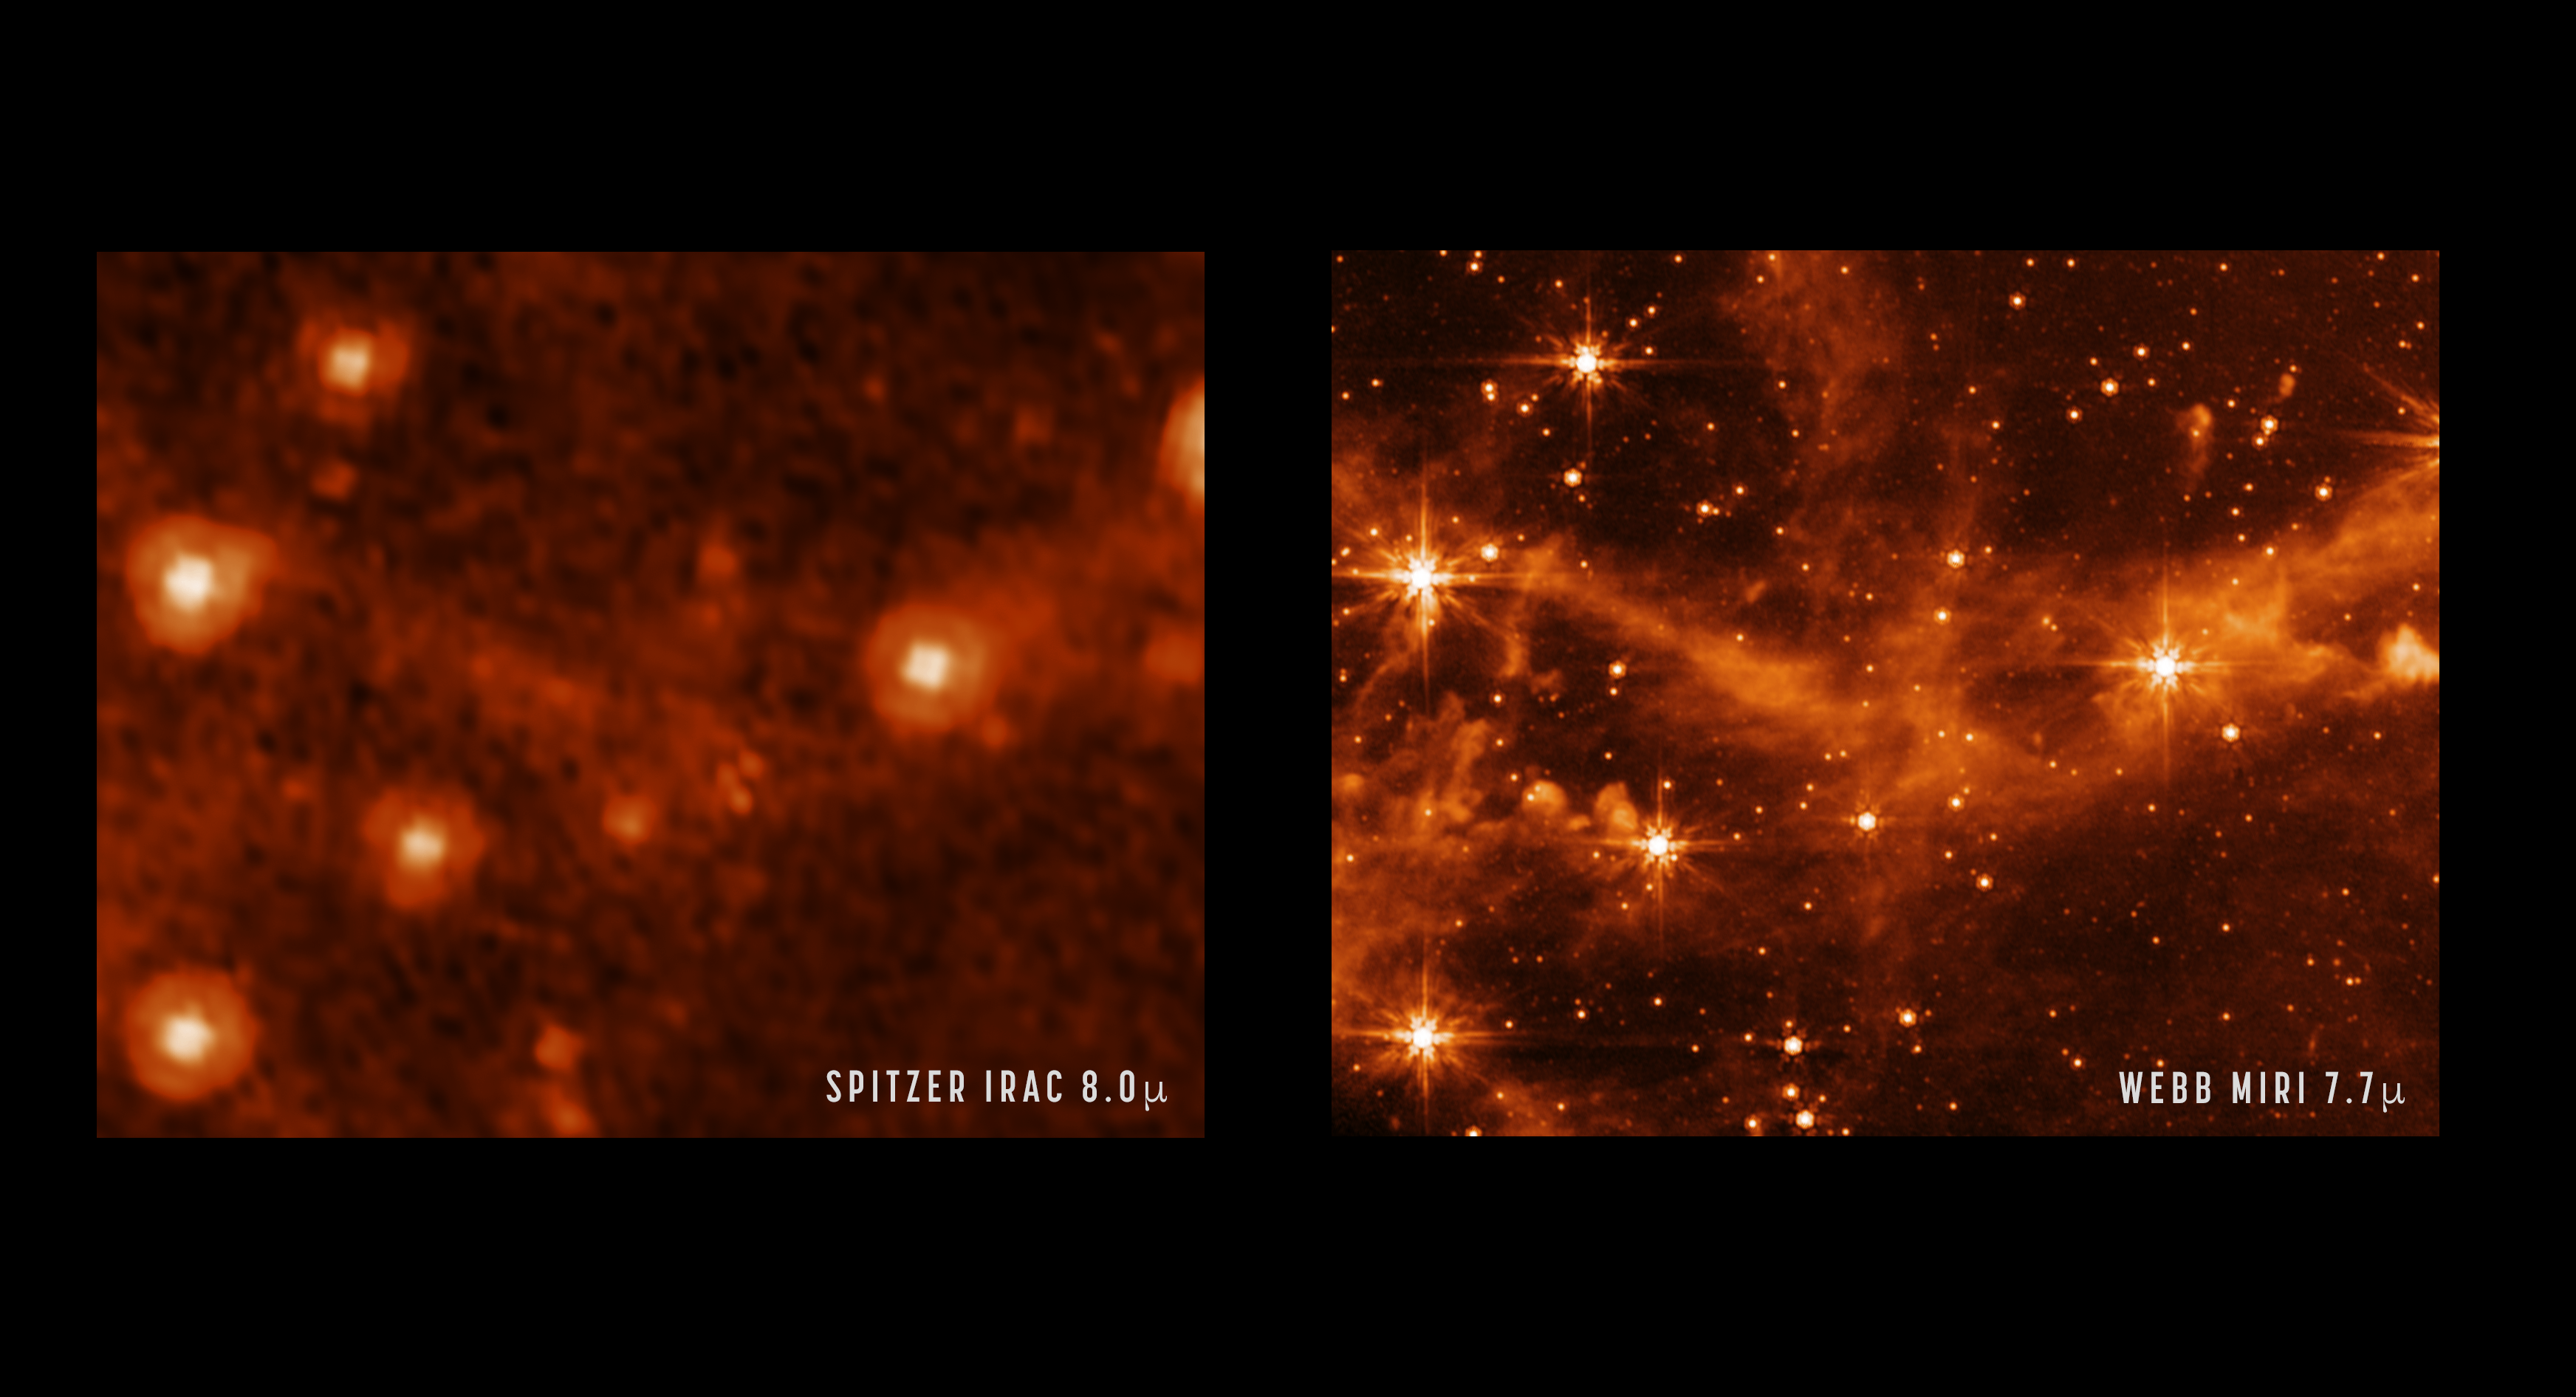 Lenyűgöző felvételek mutatják, mennyivel tisztább képet alkot az univerzumról a James Webb űrtávcső